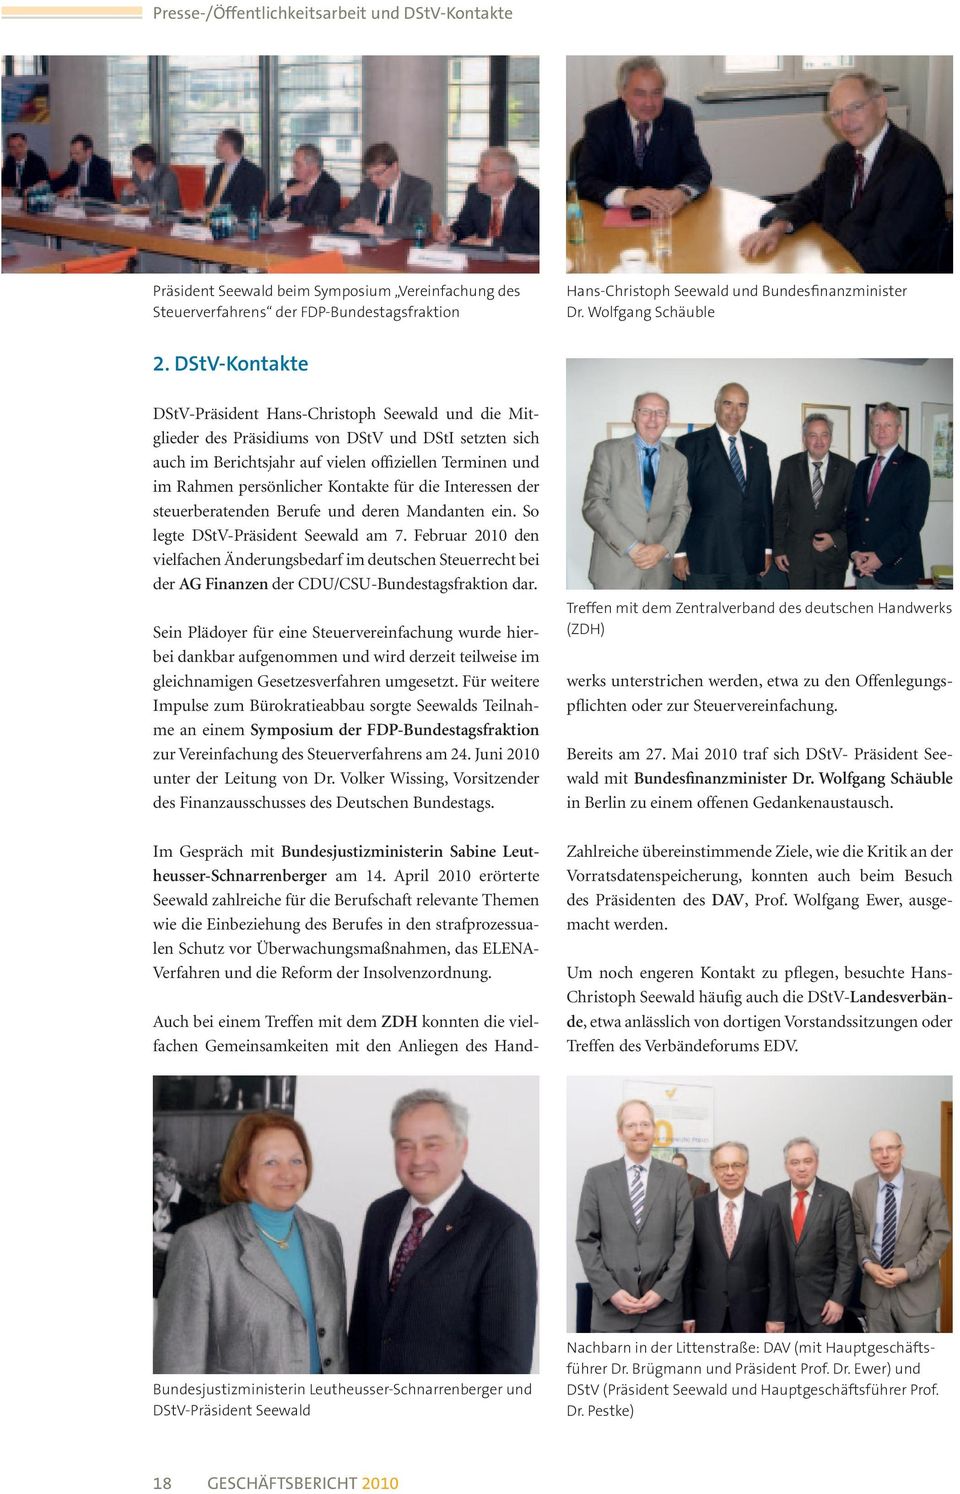 DStV-Kontakte DStV-Präsident Hans-Christoph Seewald und die Mitglieder des Präsidiums von DStV und DStI setzten sich auch im Berichtsjahr auf vielen offiziellen Terminen und im Rahmen persönlicher